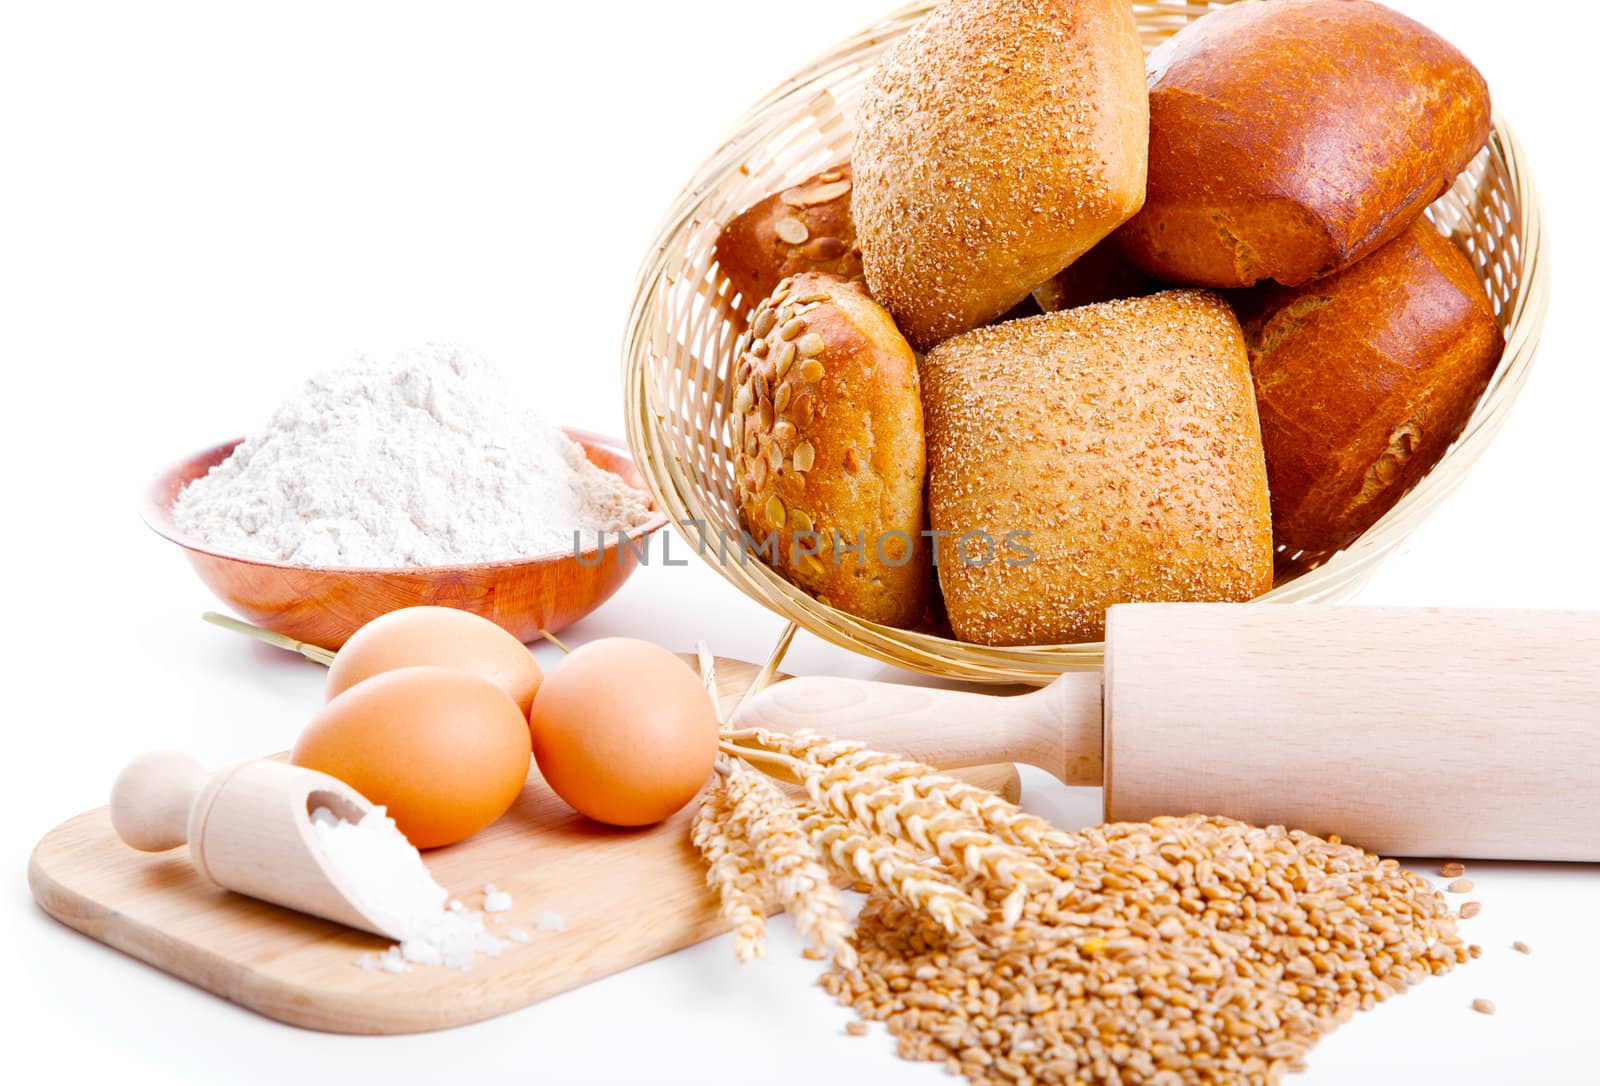 ingredients for homemade bread  by motorolka